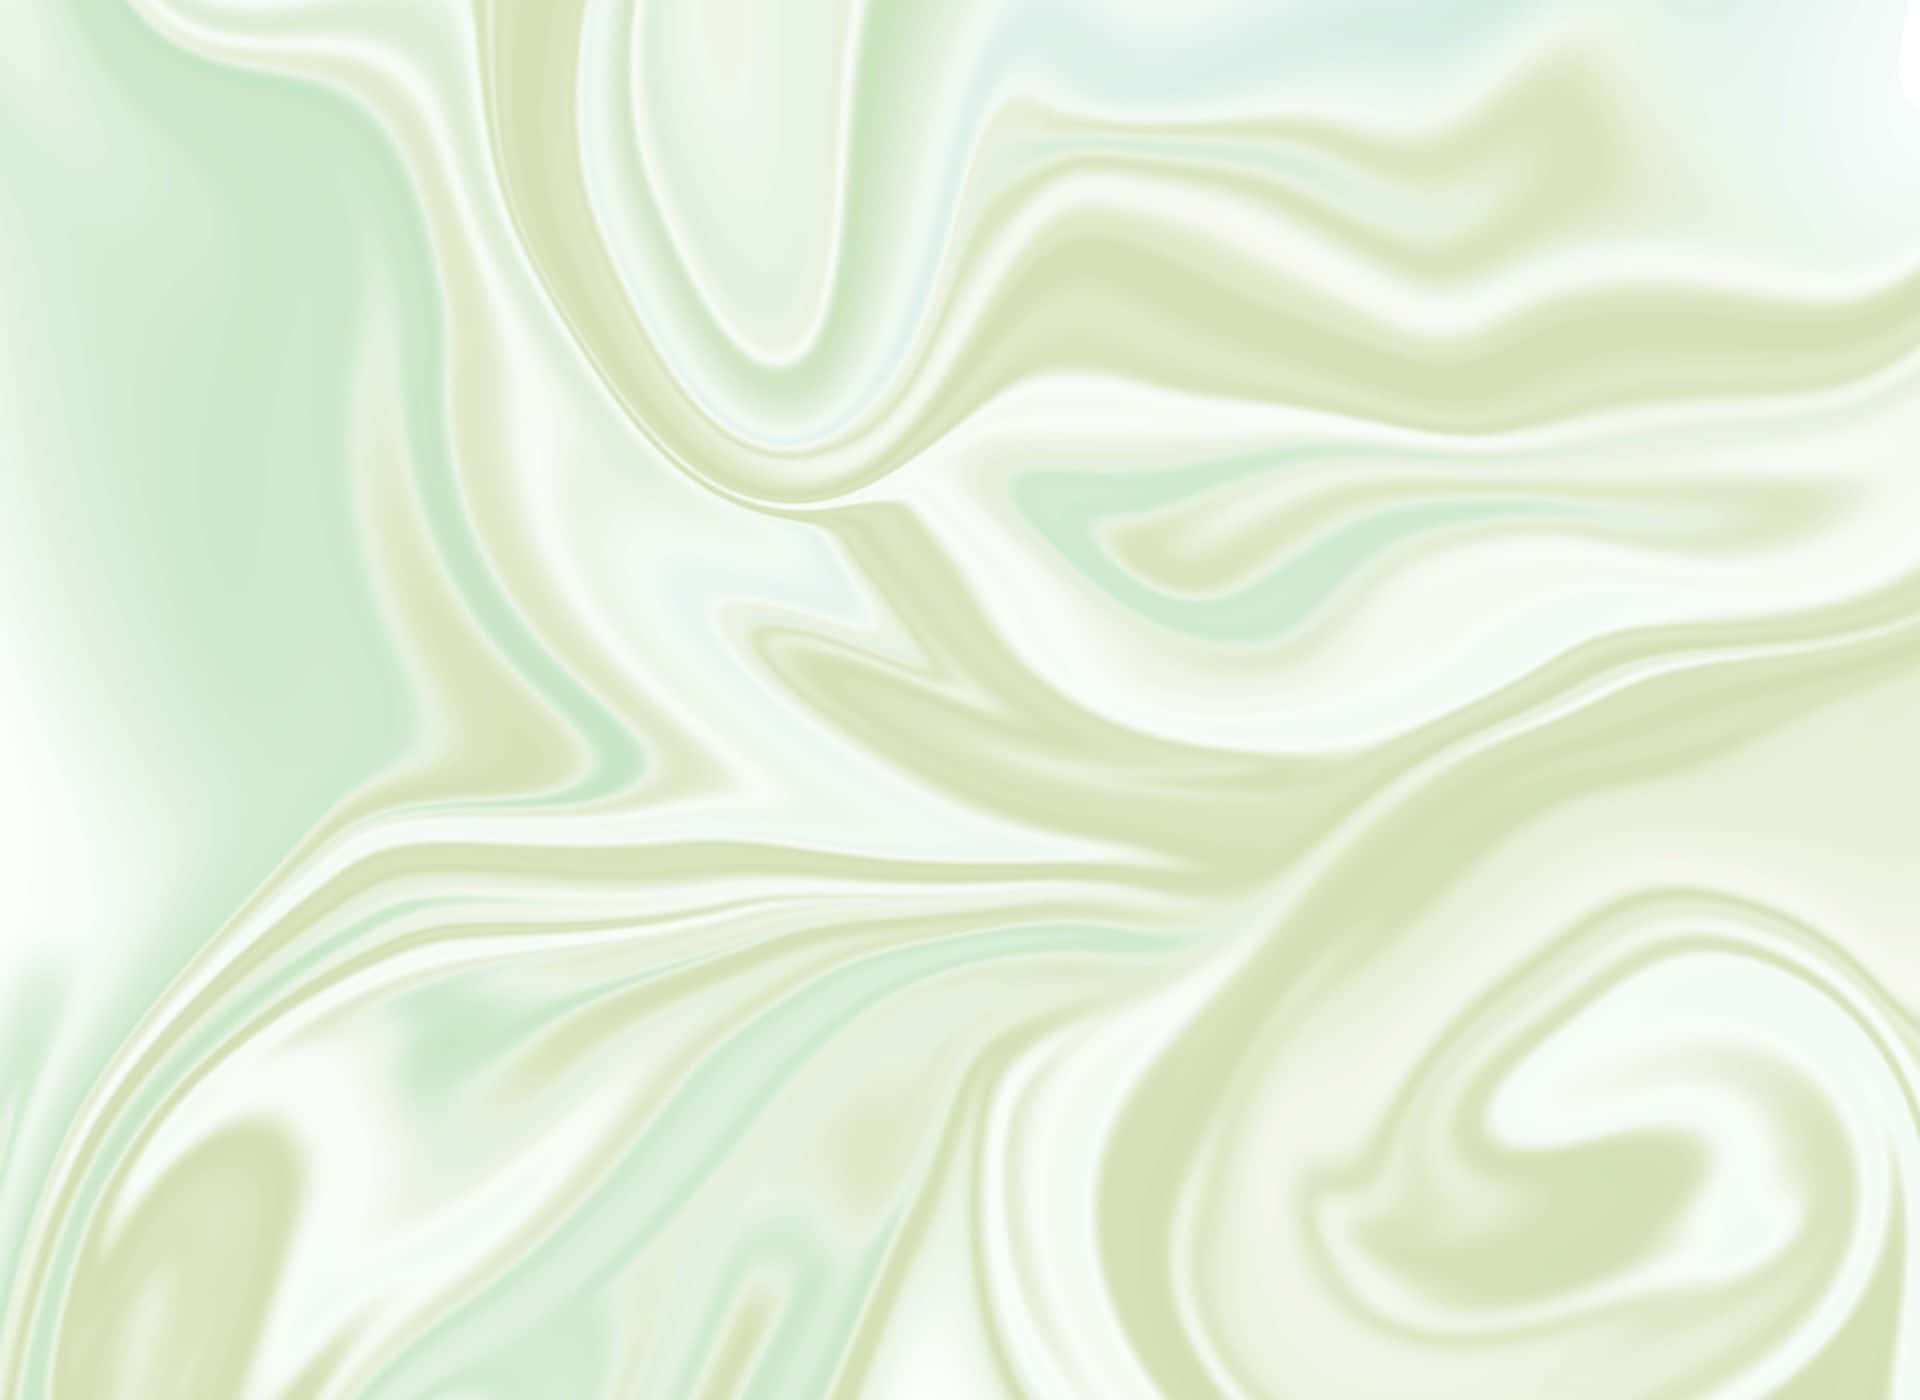 Leichtgrüner Hd-marmorhintergrund